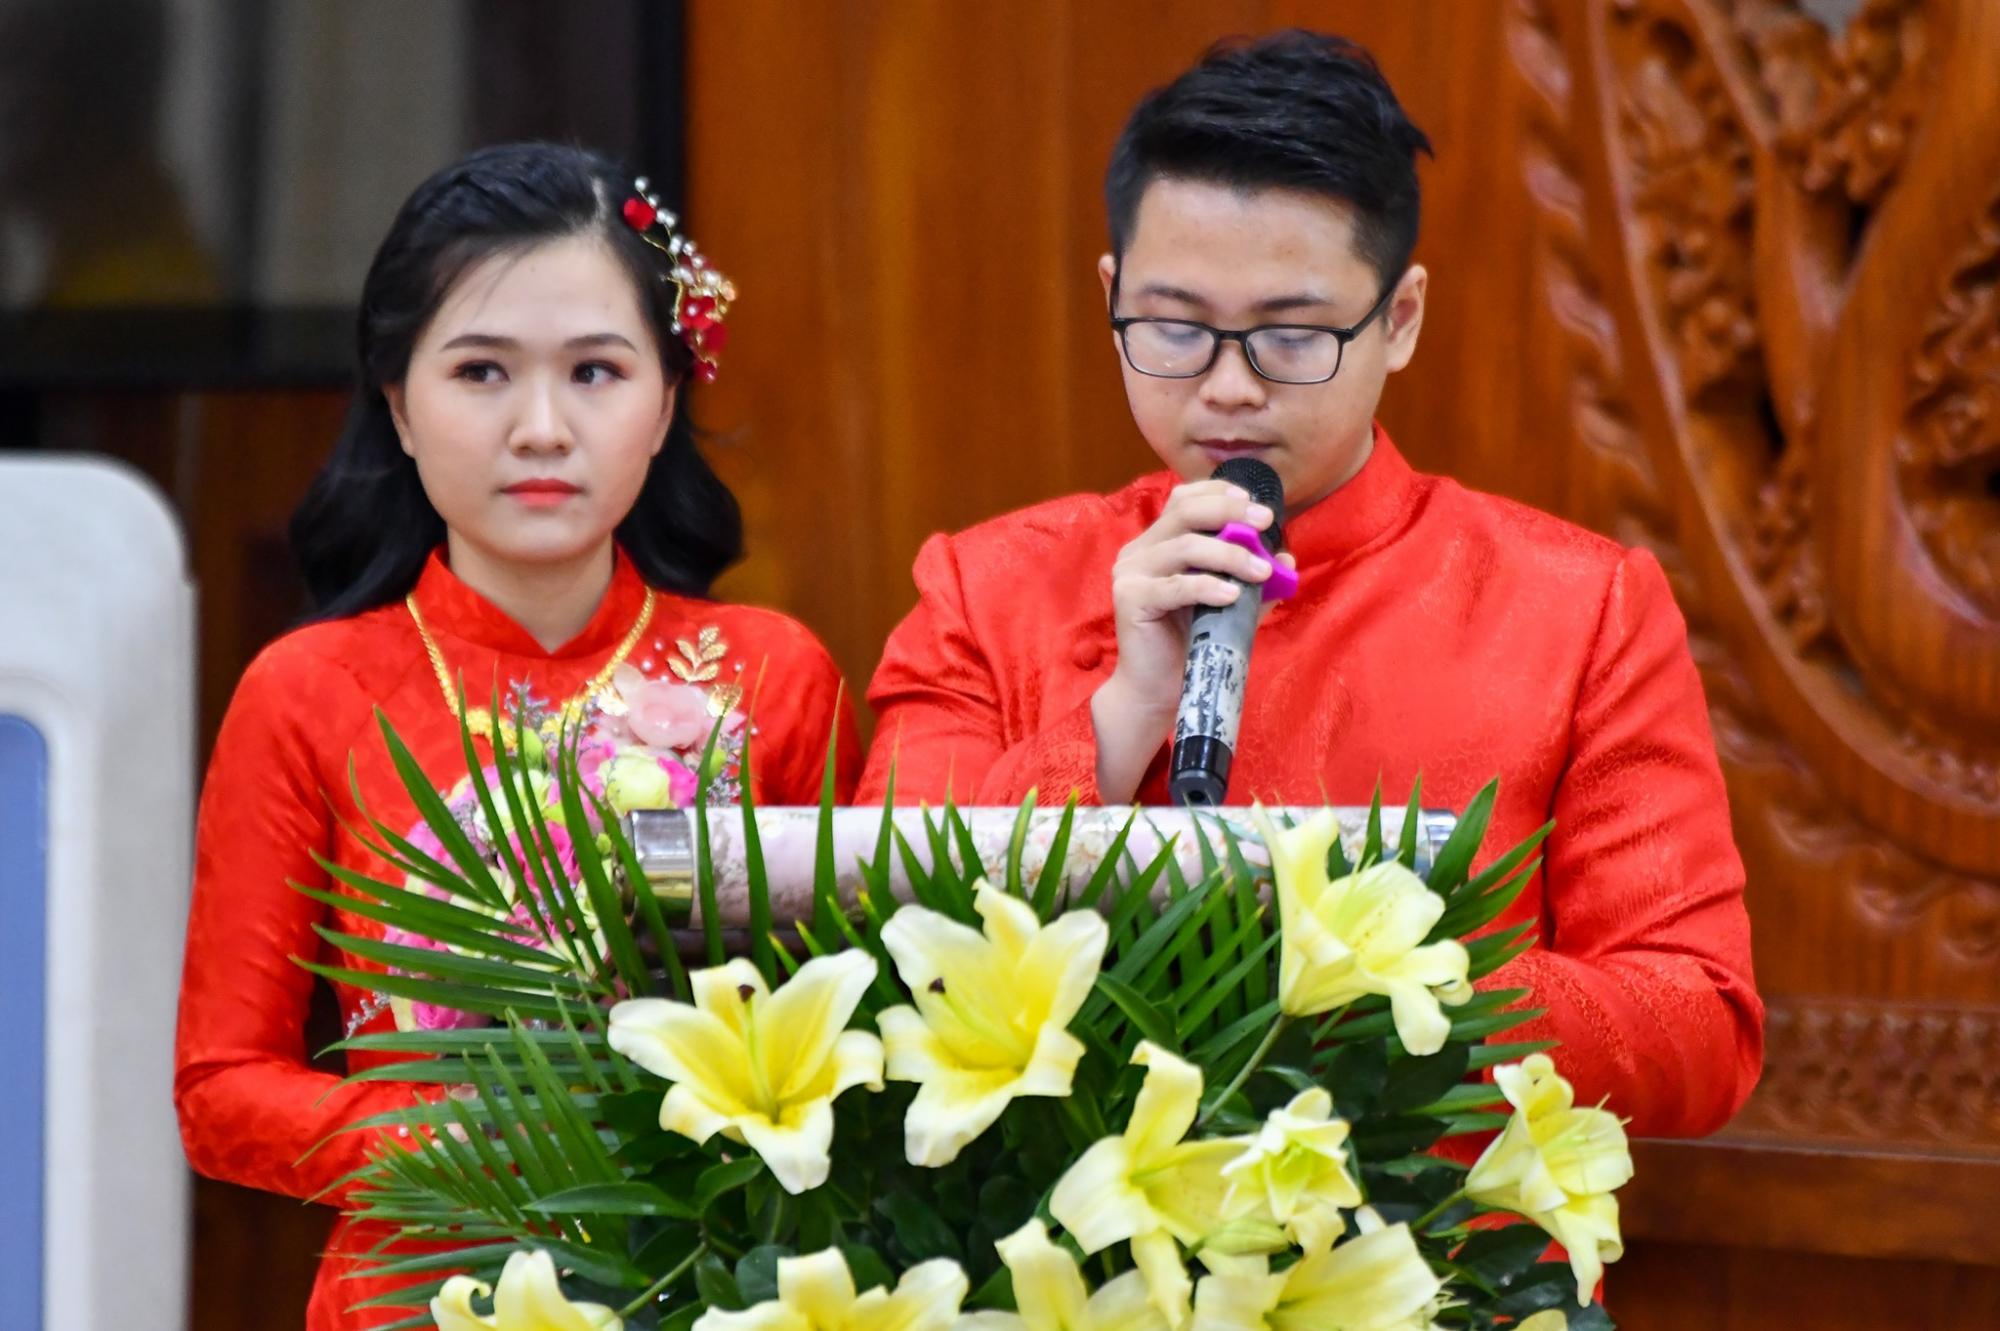 Lễ Hằng thuận của chú rể Hưng Thịnh (PD. Minh Thuận) và cô dâu Ngọc Duyên (PD. Diệu An) tại chùa Giác Ngộ